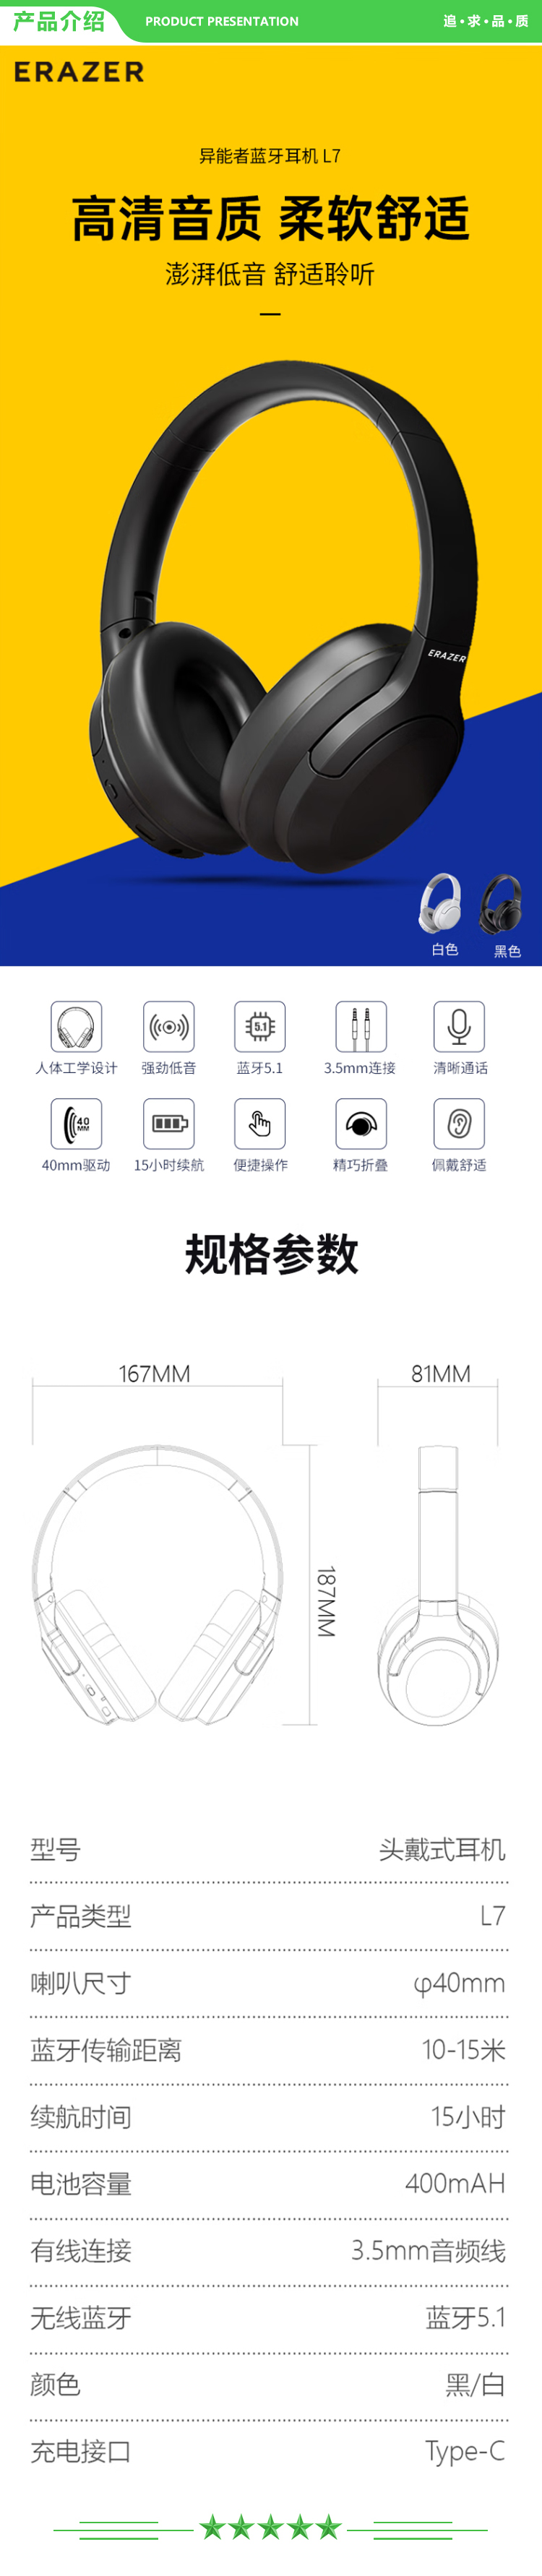 联想 Lenovo 异能者L7 头戴式无线蓝牙耳机电竞运动立体声音乐耳机蓝牙5.1通用苹果华为小米手机重低音耳麦 黑色 .jpg